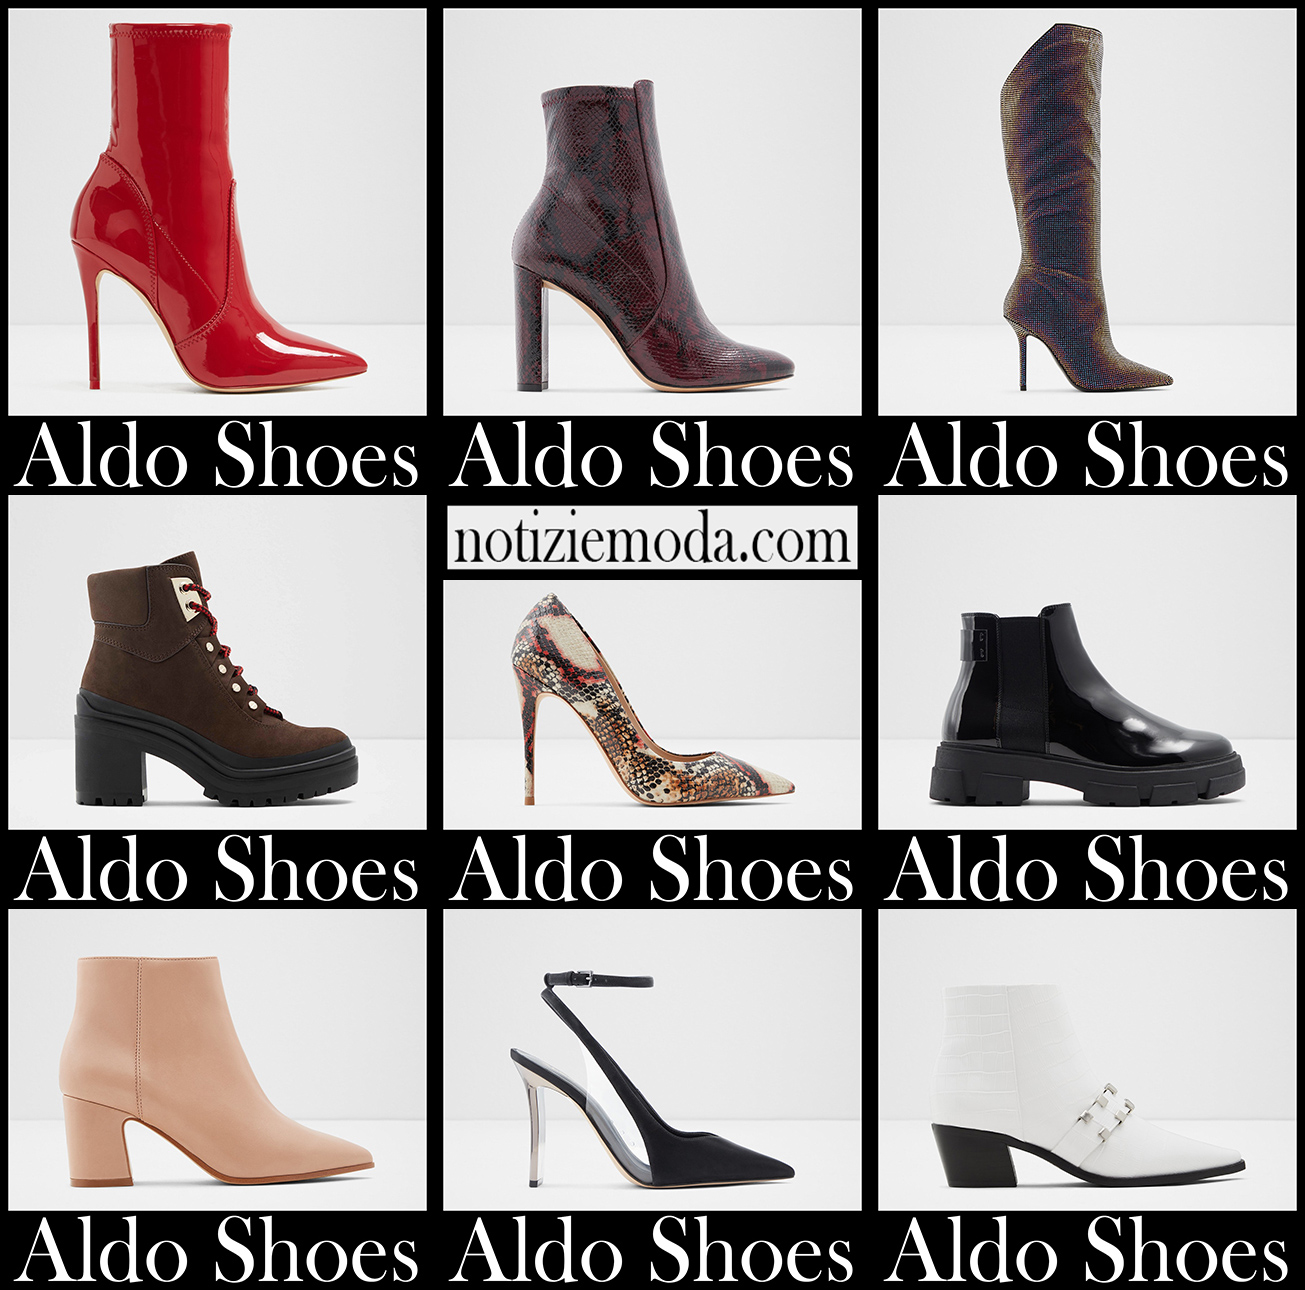 Nuovi arrivi scarpe Aldo 2021 calzature moda donna